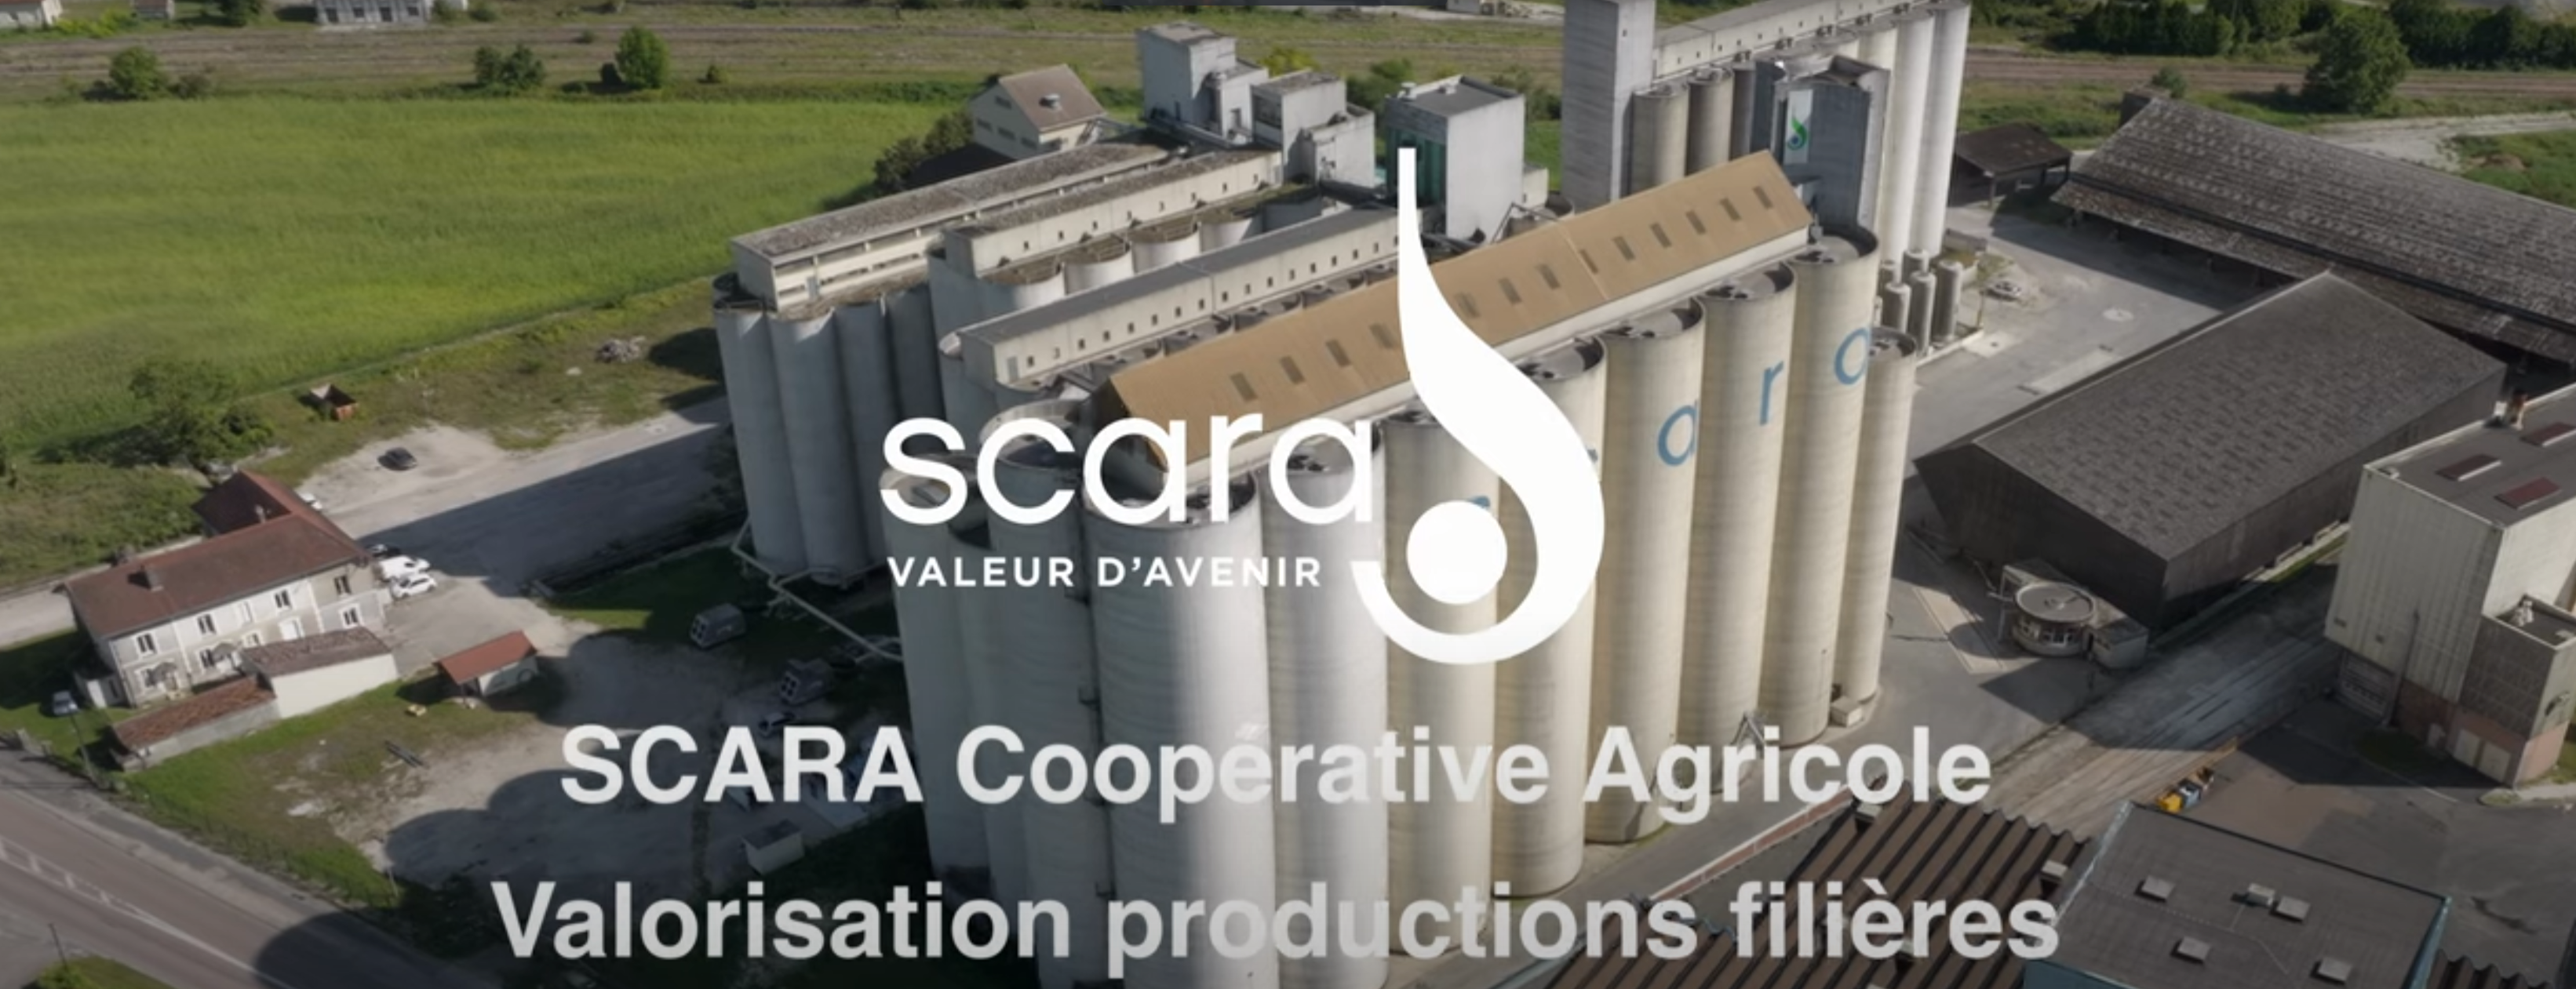 Découvrir les coulisses de notre savoir-faire avec cette vidéo présentant la SCARA en tant qu'entreprise ancrée sur son territoire !